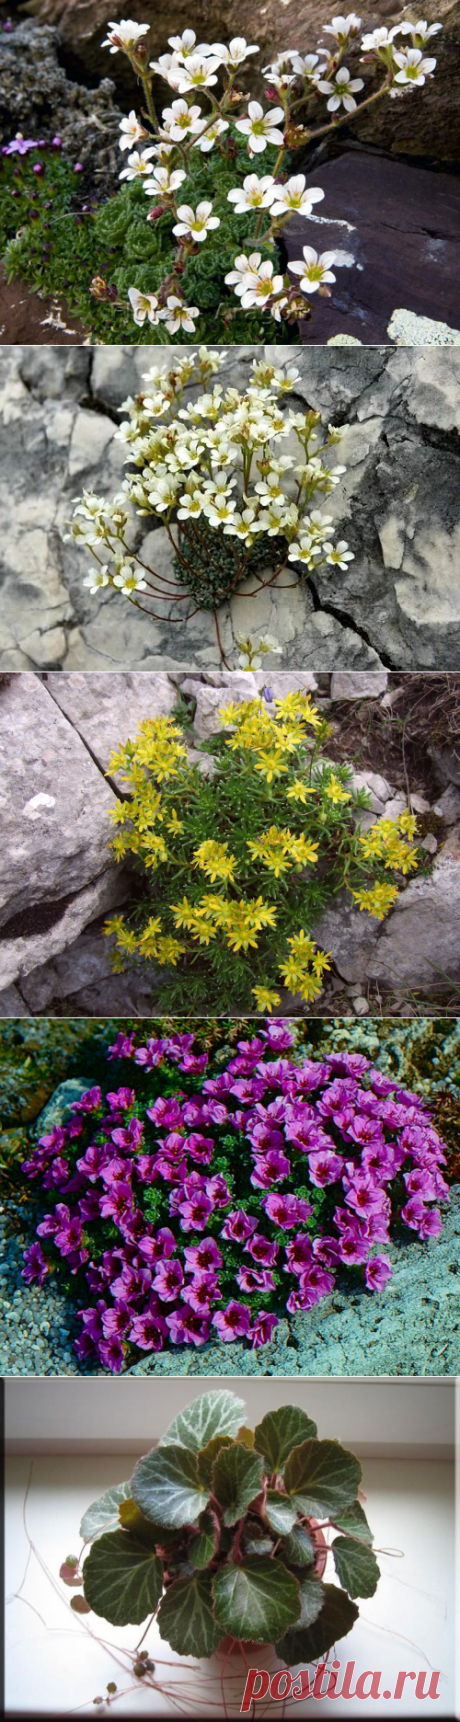 Выращивание камнеломки в домашних условиях, виды, фото | Цветовод-Консалтинг